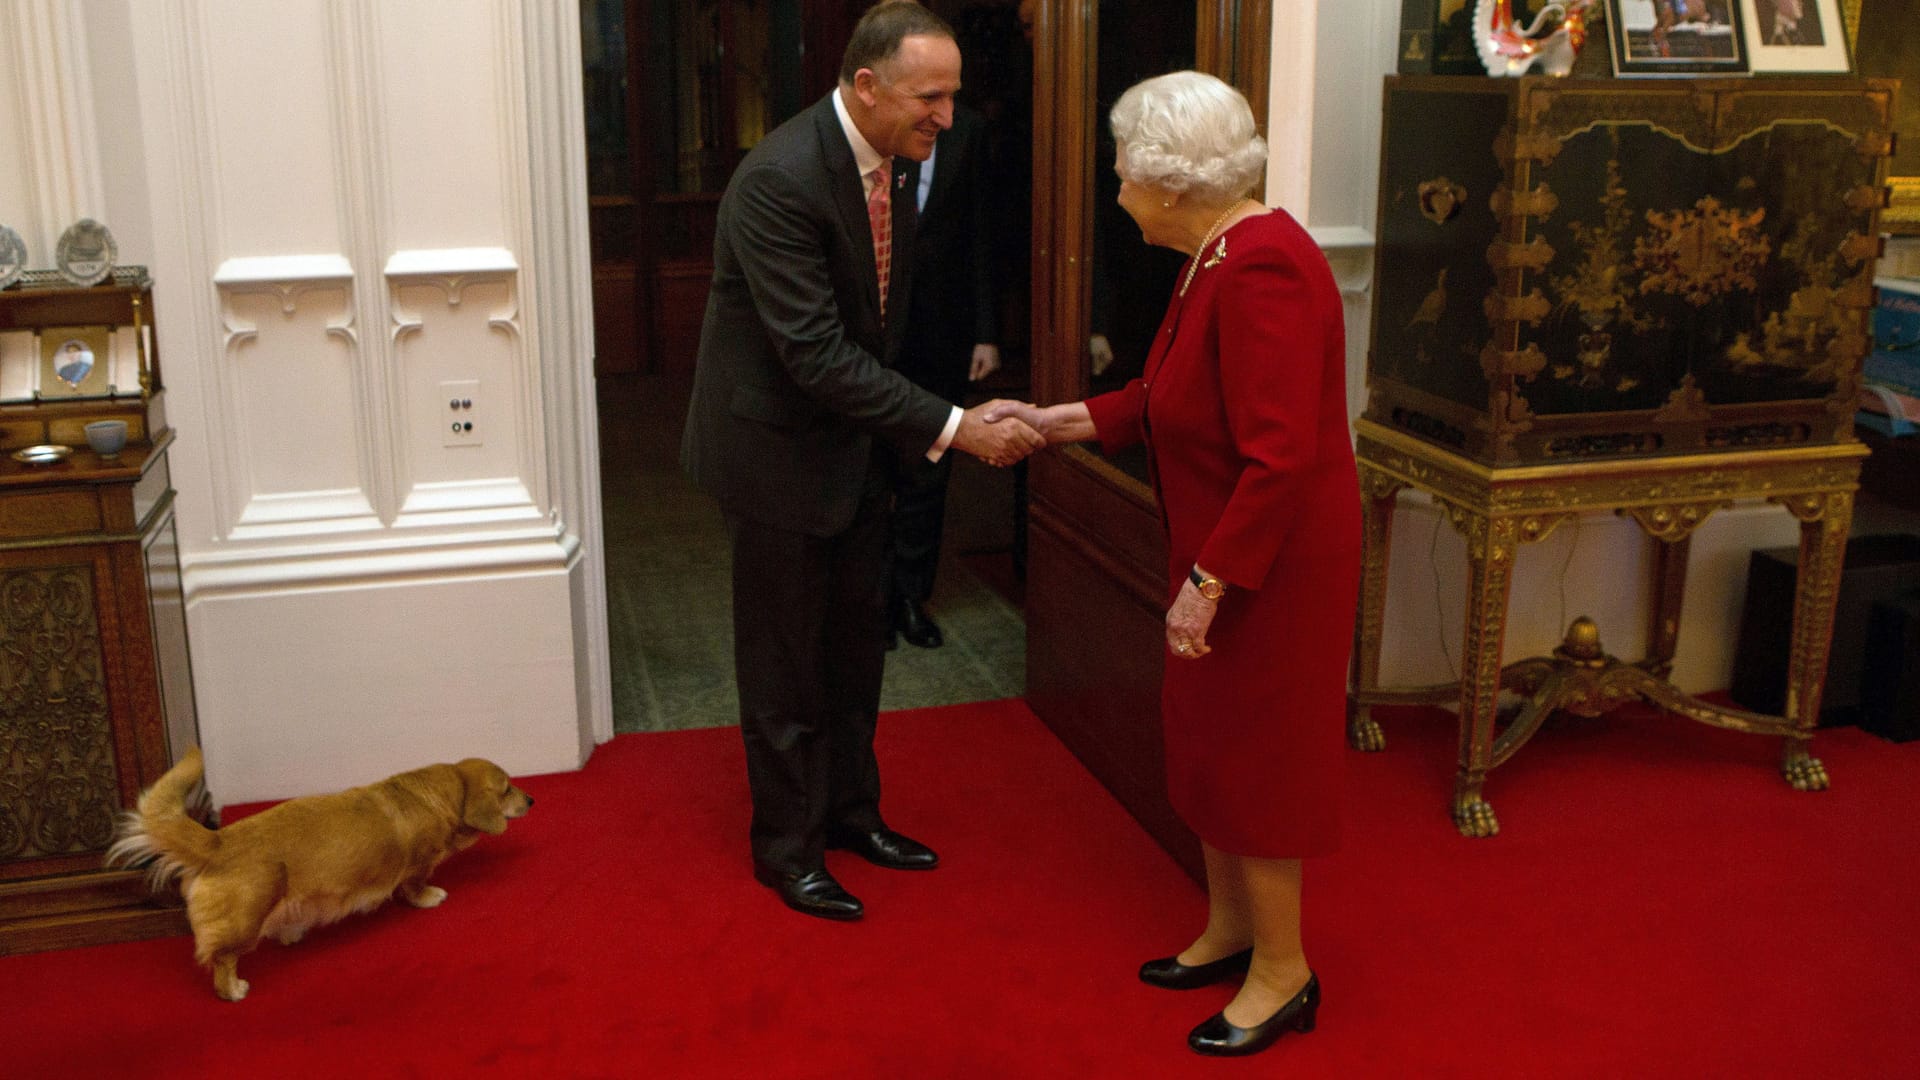 2015 besuchte John Key, der damalige Premierminister Neuseelands, die Monarchin. Auch einer ihrer Hunde durfte dabei sein.